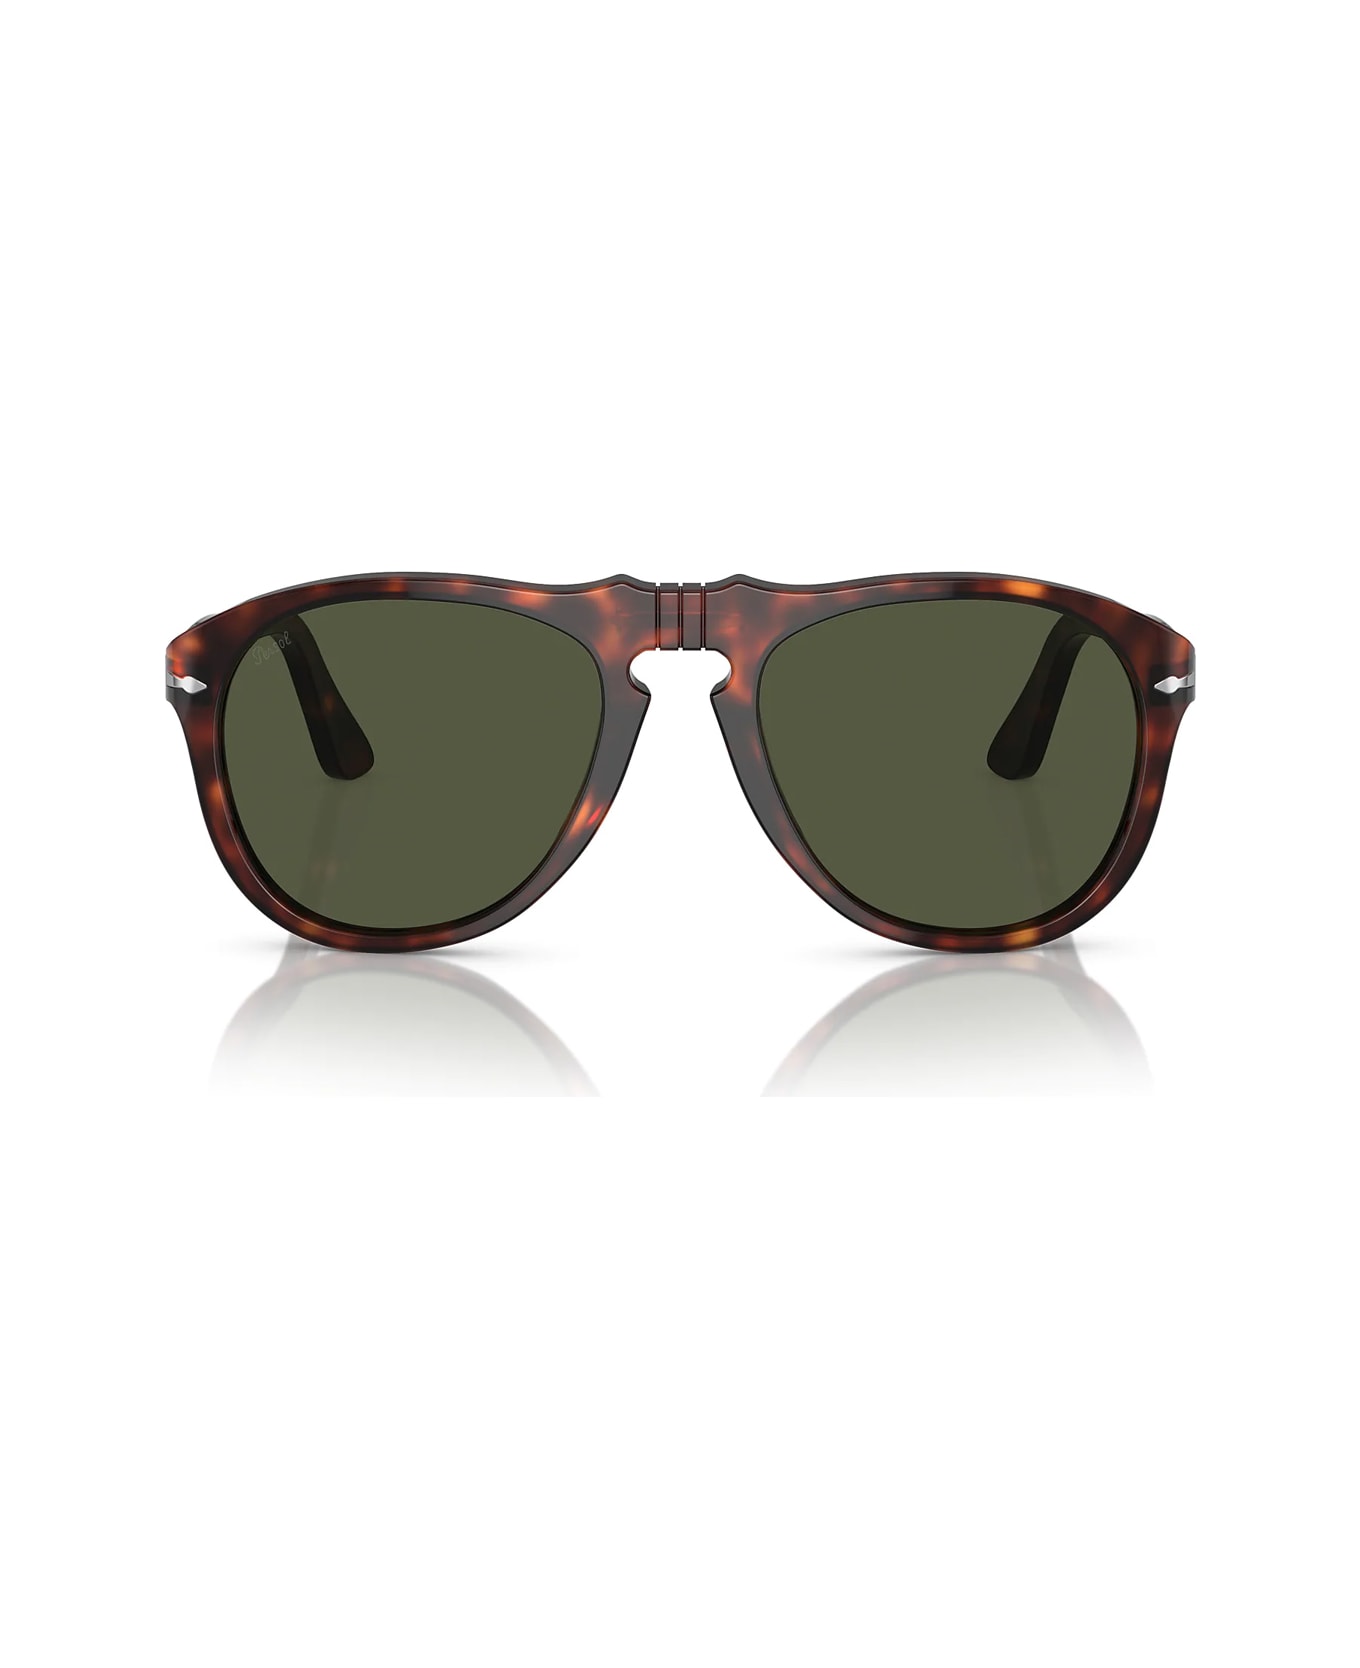 Persol Po0649 24/31 Sunglasses - Marrone サングラス